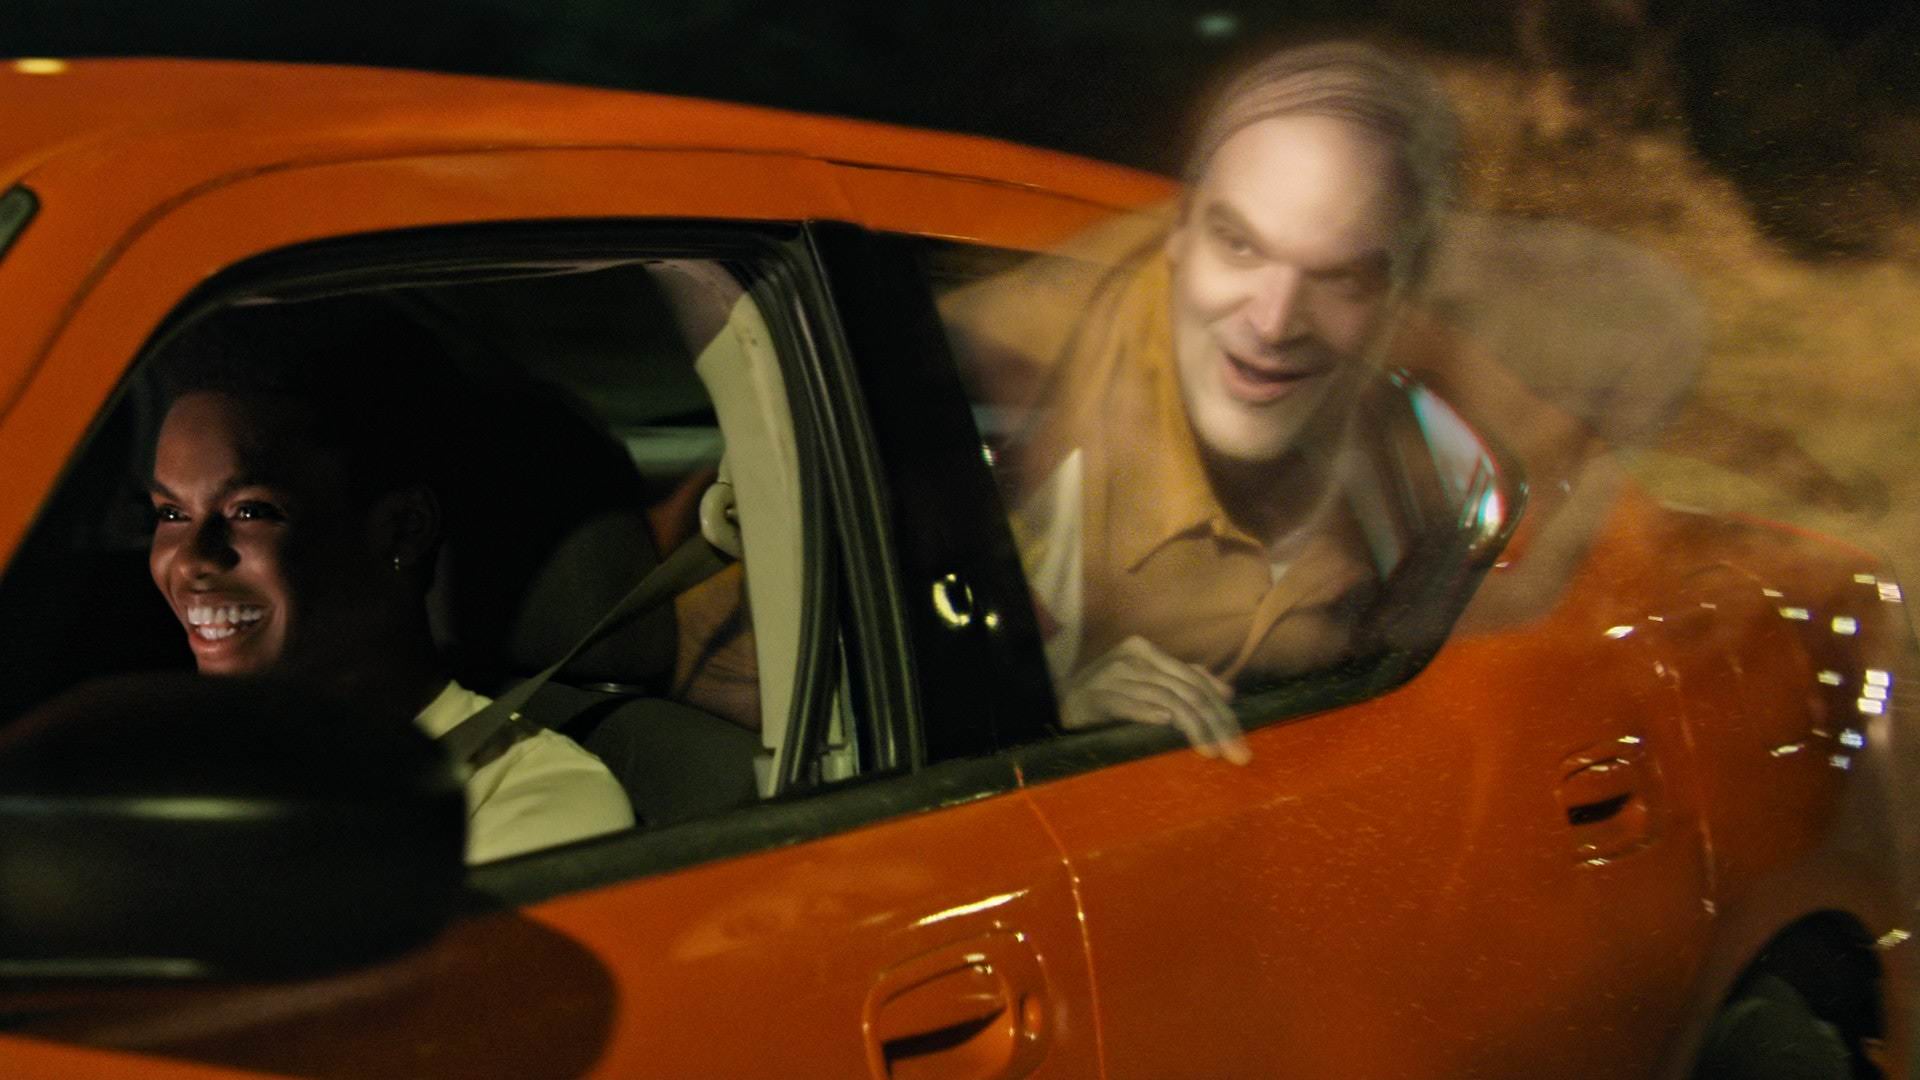 دیوید هاربر در نقش یک روح در یک ماشین در فیلم We Have a Ghost